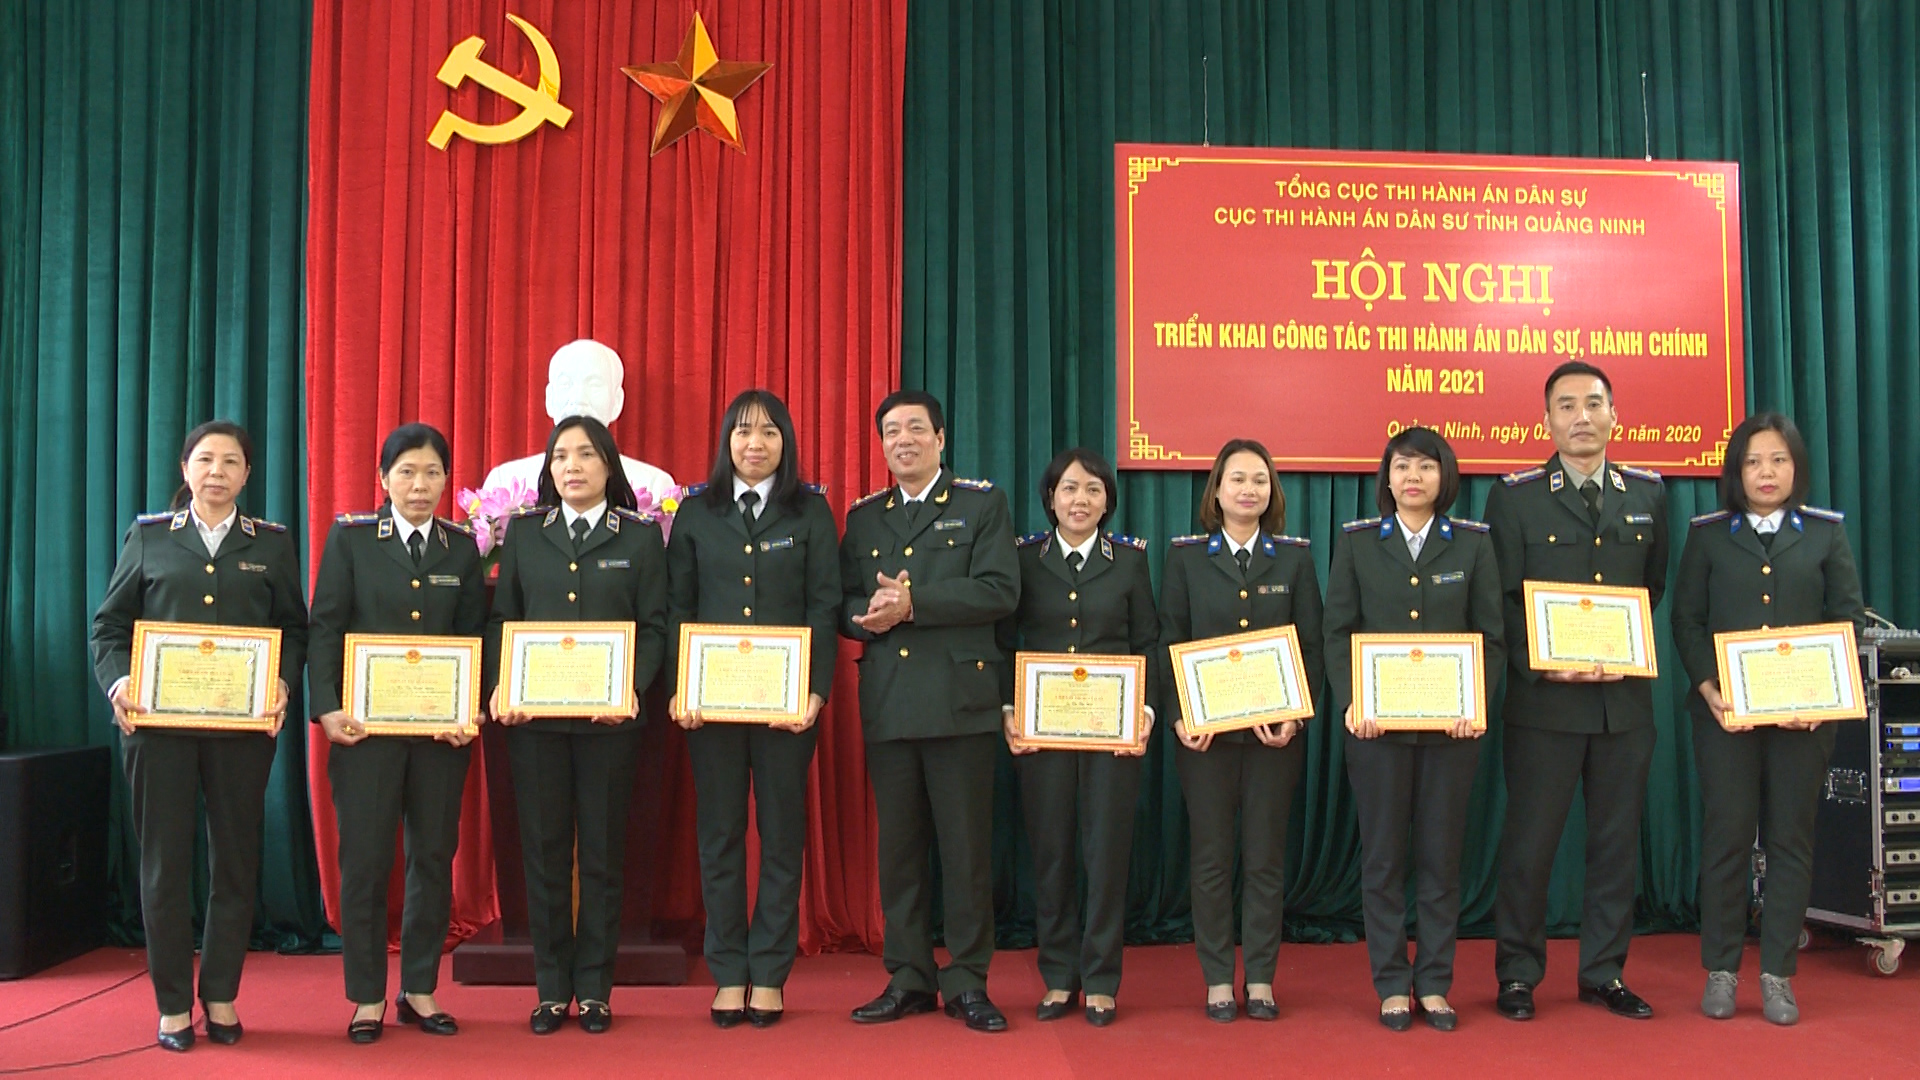  Lãnh đạo Cục THADS tỉnh khen thưởng cho các tập thể và cá nhân có thành tích trong công tác thi hành án dân sự, hành chính năm 2020. Ảnh: Dương Thu Hương.